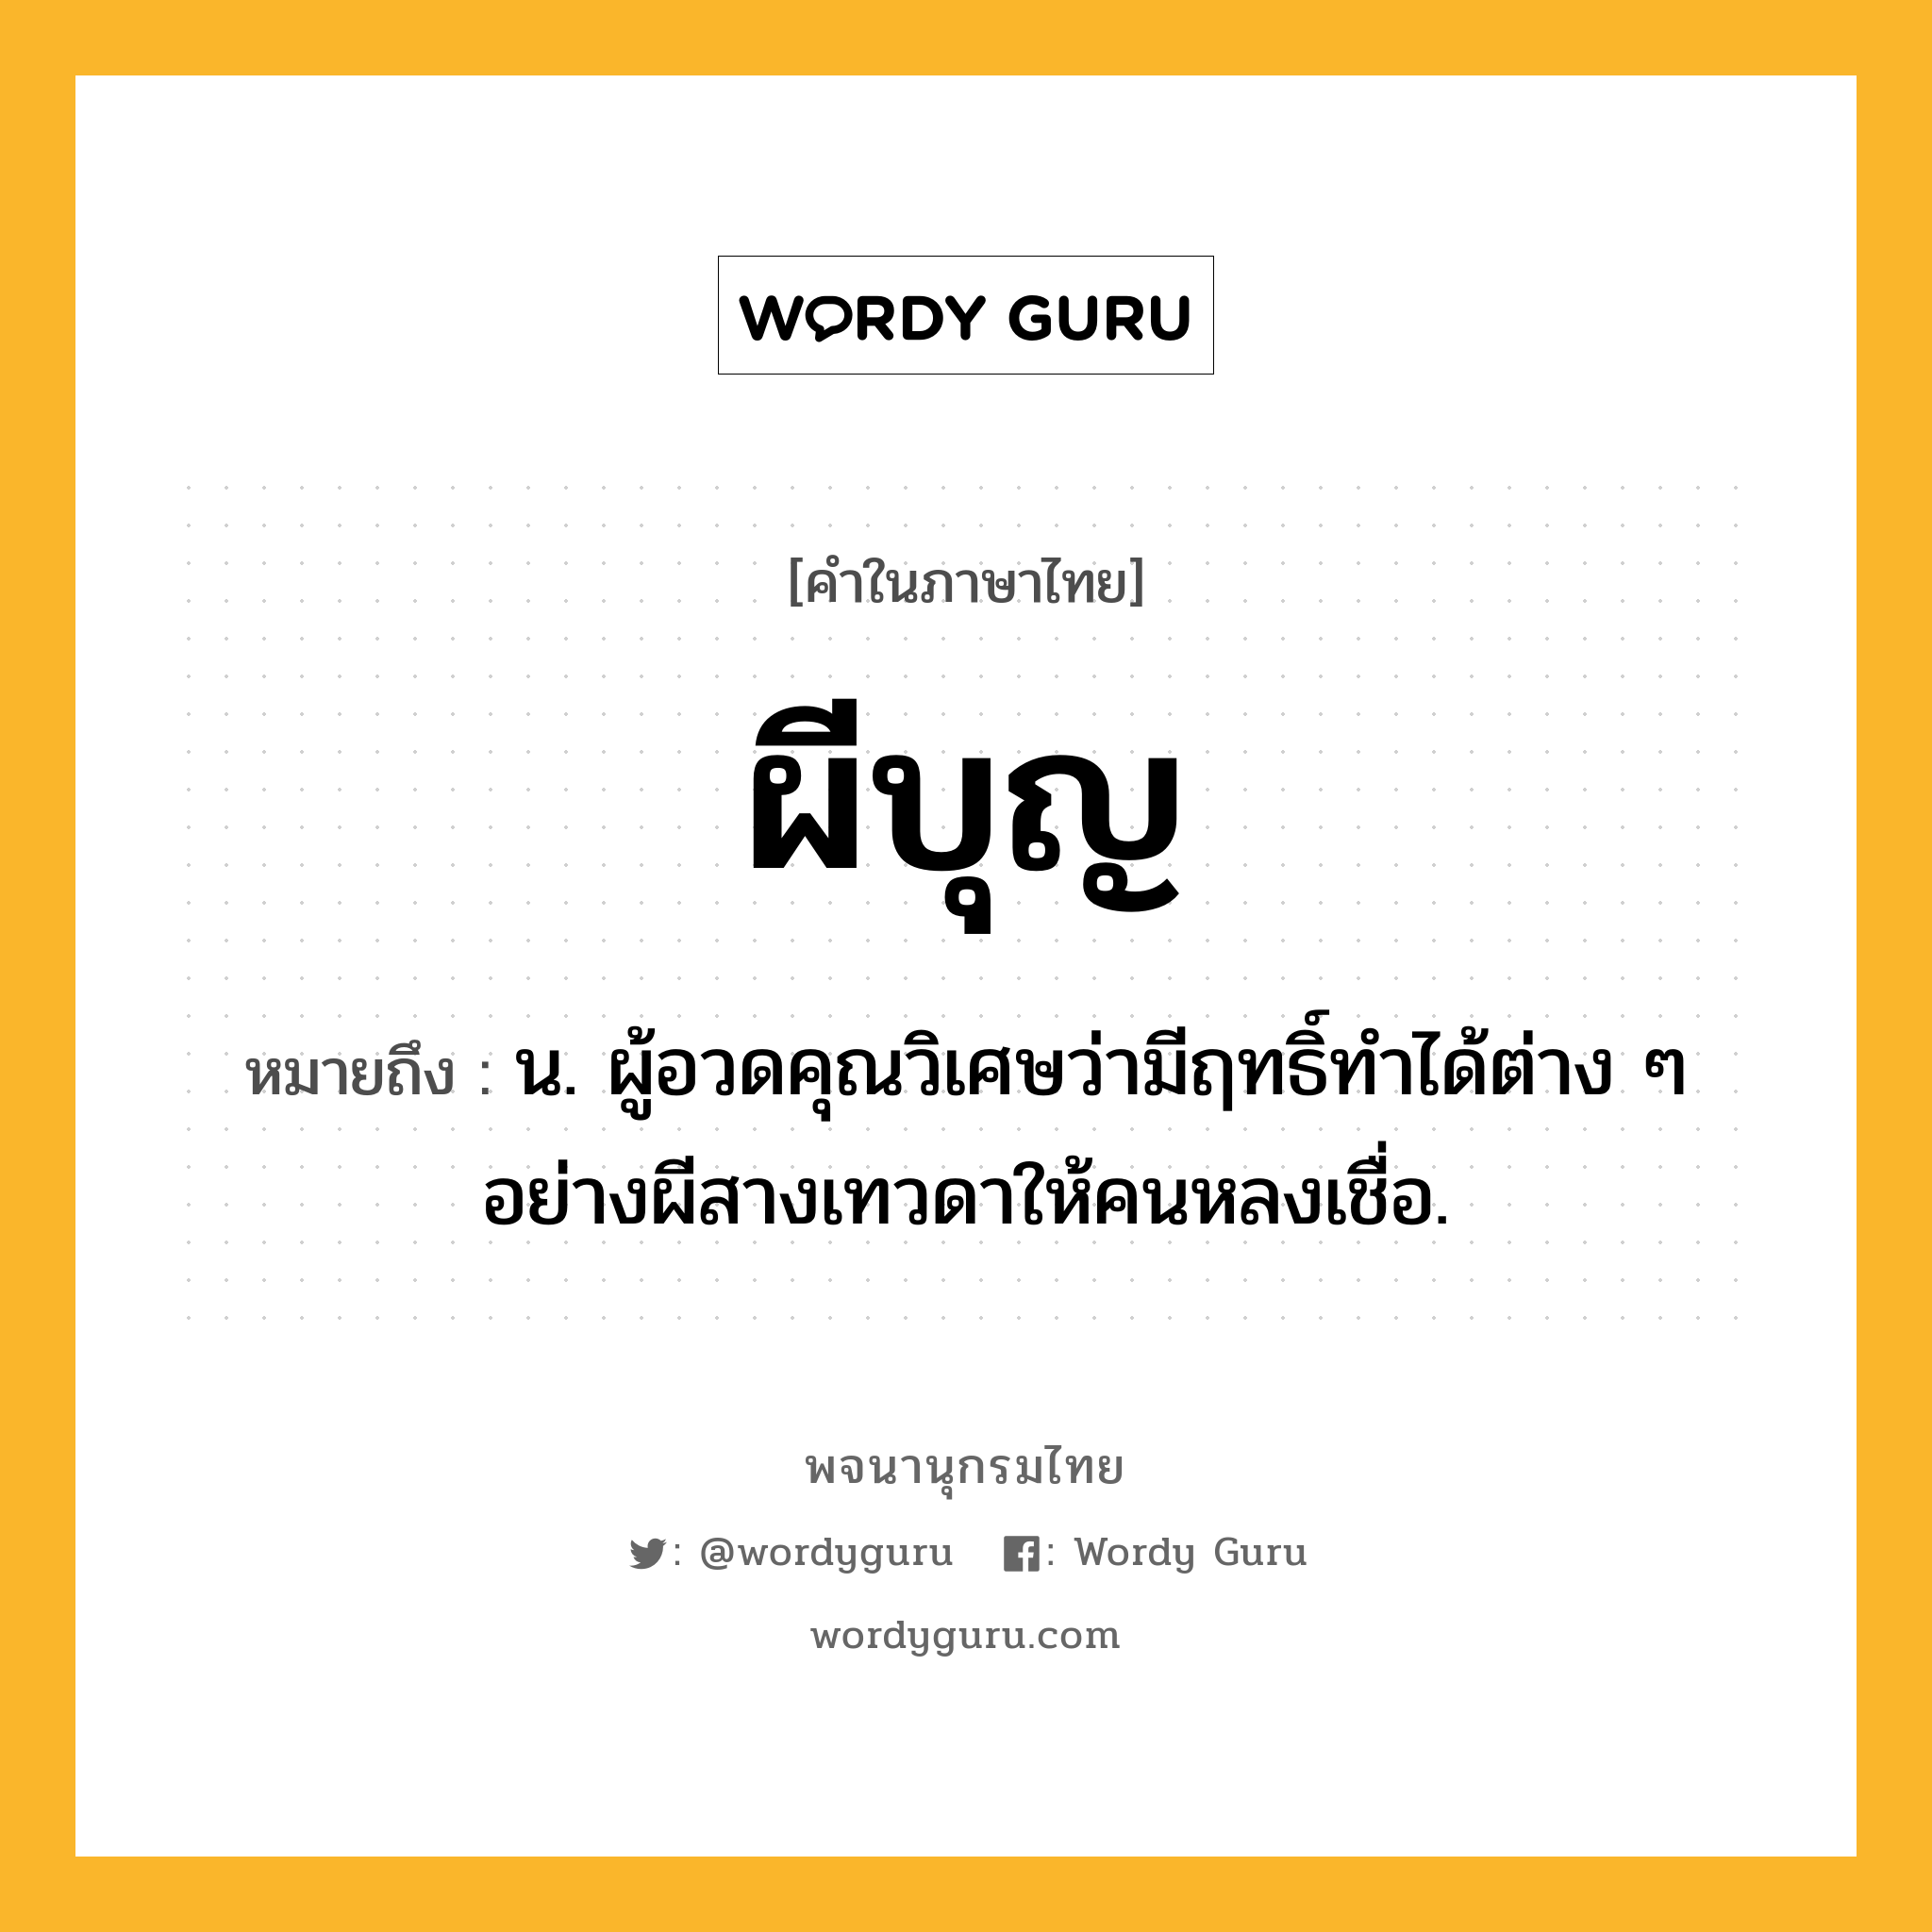 ผีบุญ หมายถึงอะไร?, คำในภาษาไทย ผีบุญ หมายถึง น. ผู้อวดคุณวิเศษว่ามีฤทธิ์ทําได้ต่าง ๆ อย่างผีสางเทวดาให้คนหลงเชื่อ.